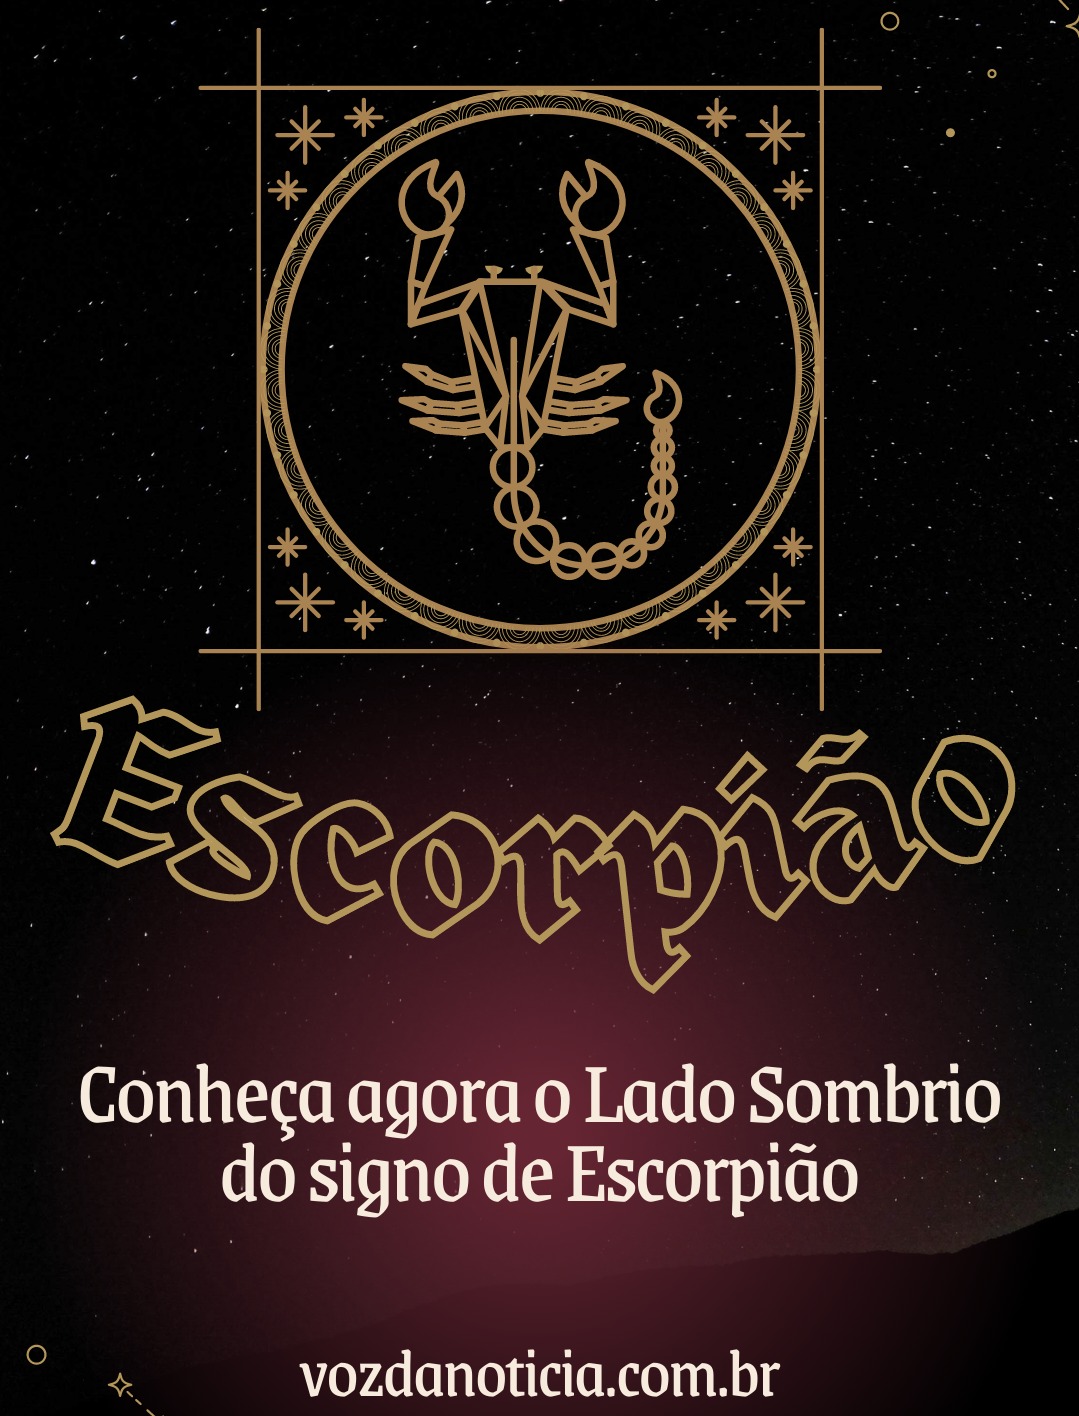 Conheca agora o Lado Sombrio
do signo de Escorpido

a vozdanoticia.com.br